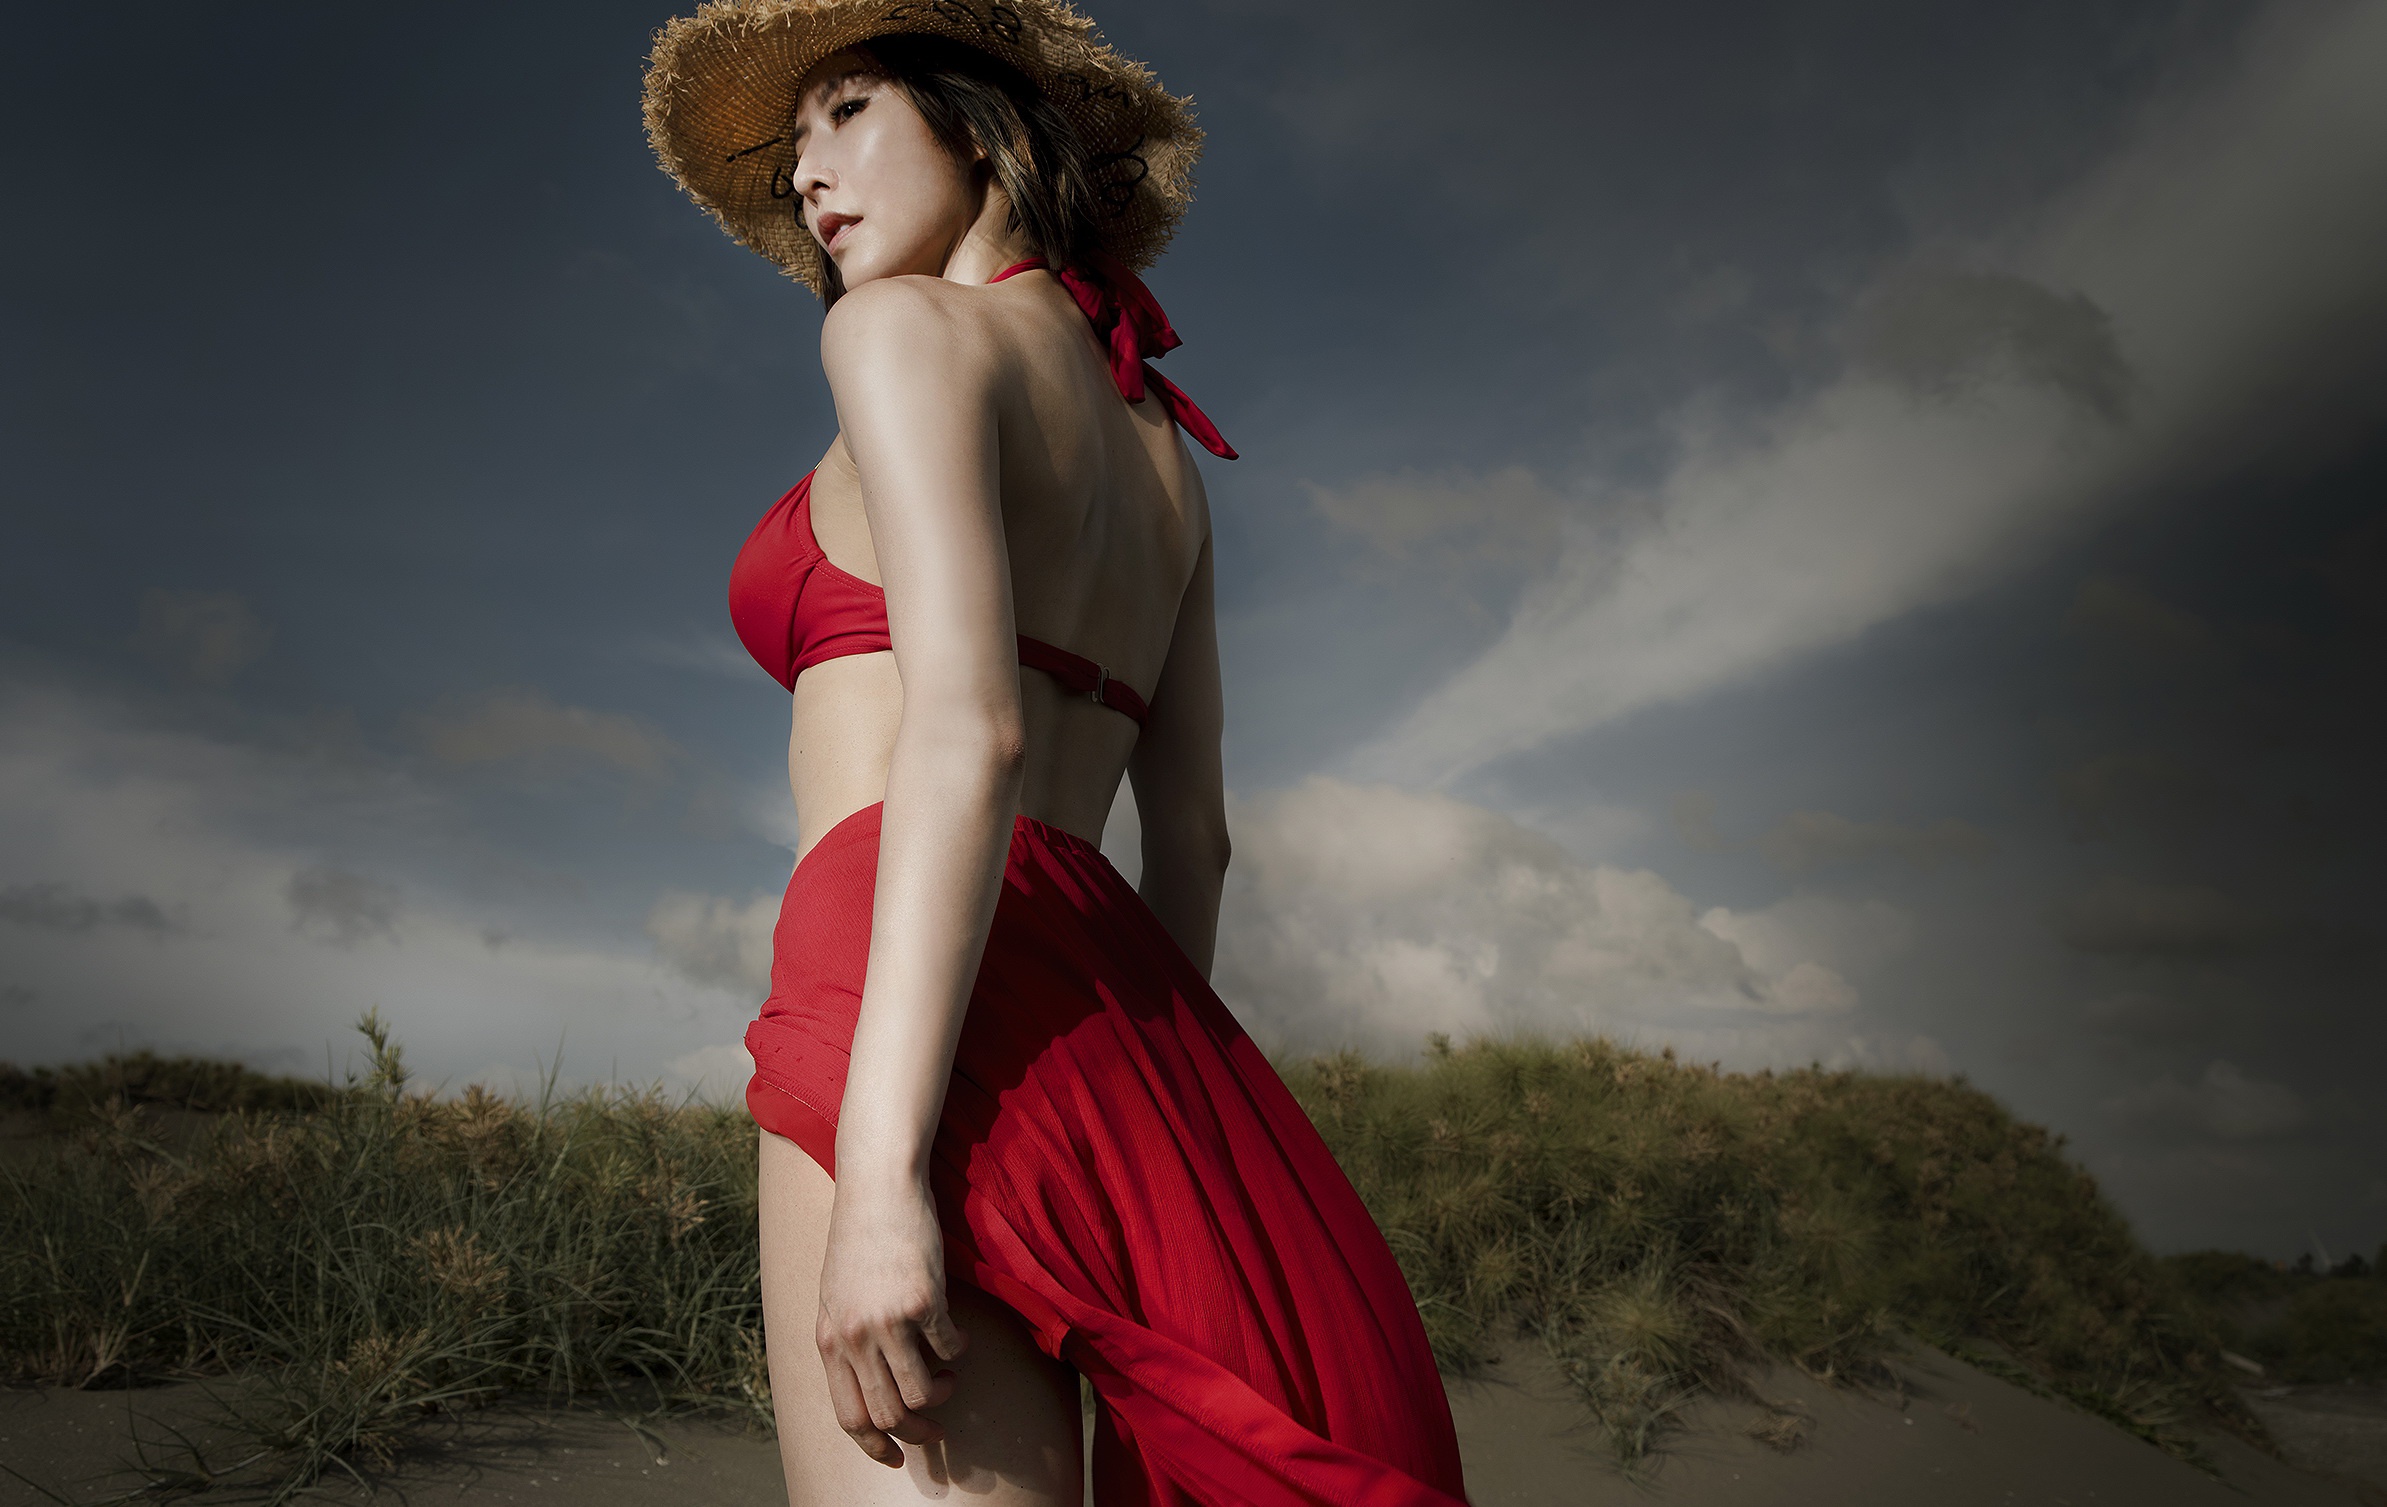 Asian Bikini Girl Hat Model Woman 2387x1507